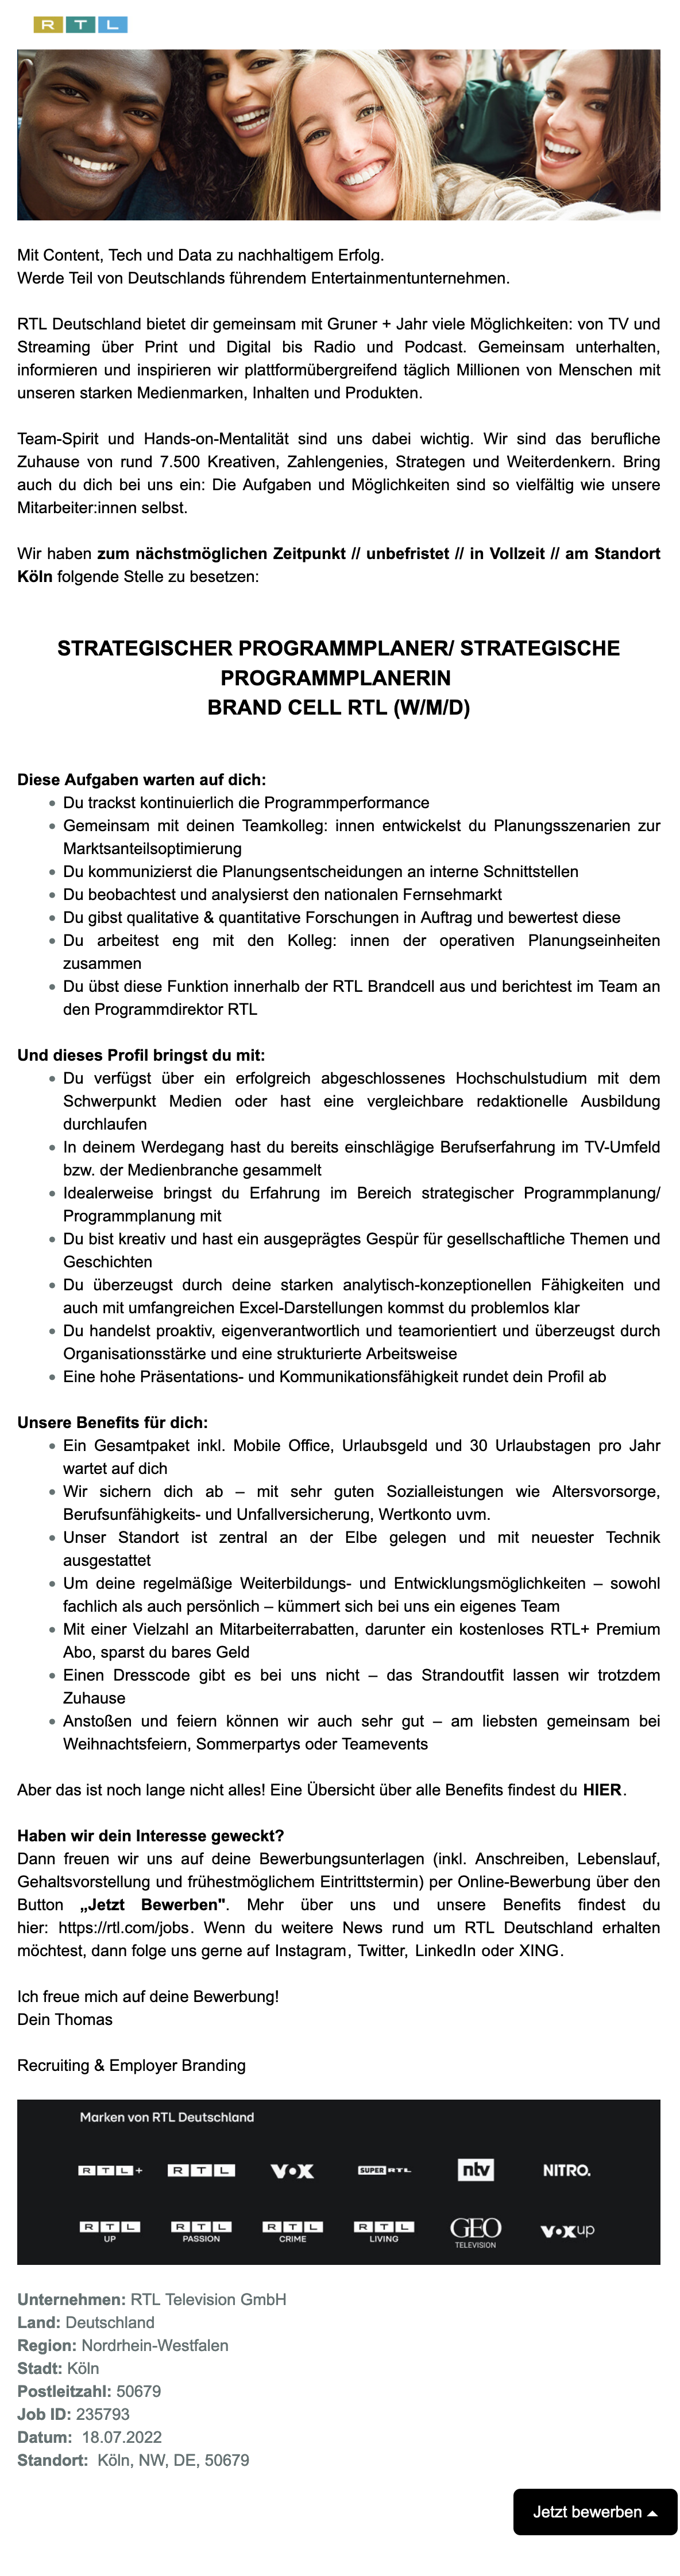 Strategischer Programmplaner Brand Cell RTL (w/m/d)